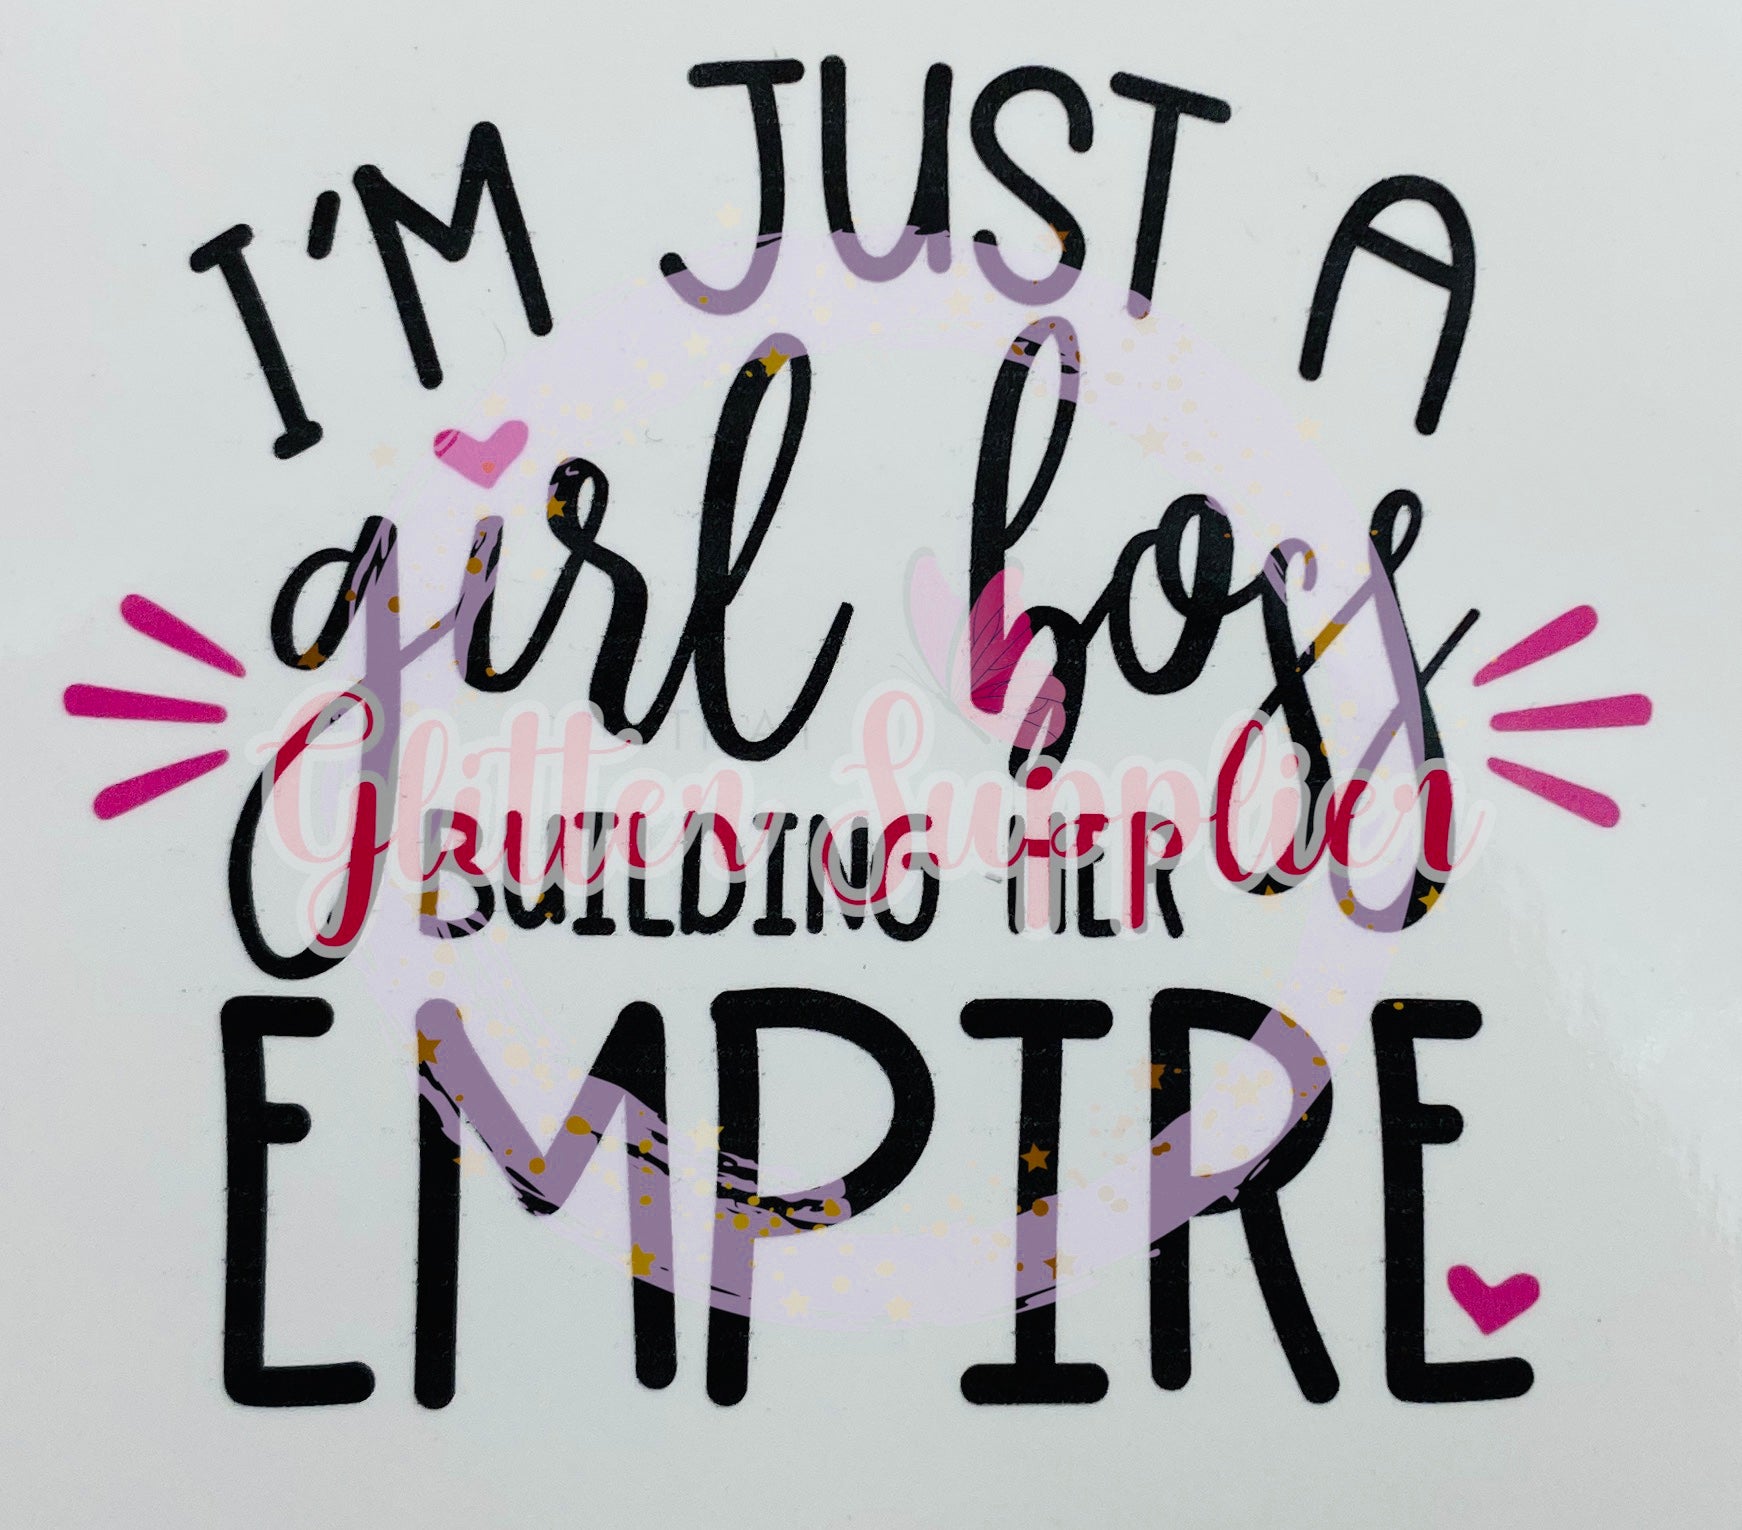 Girl Boss Building Her Empire